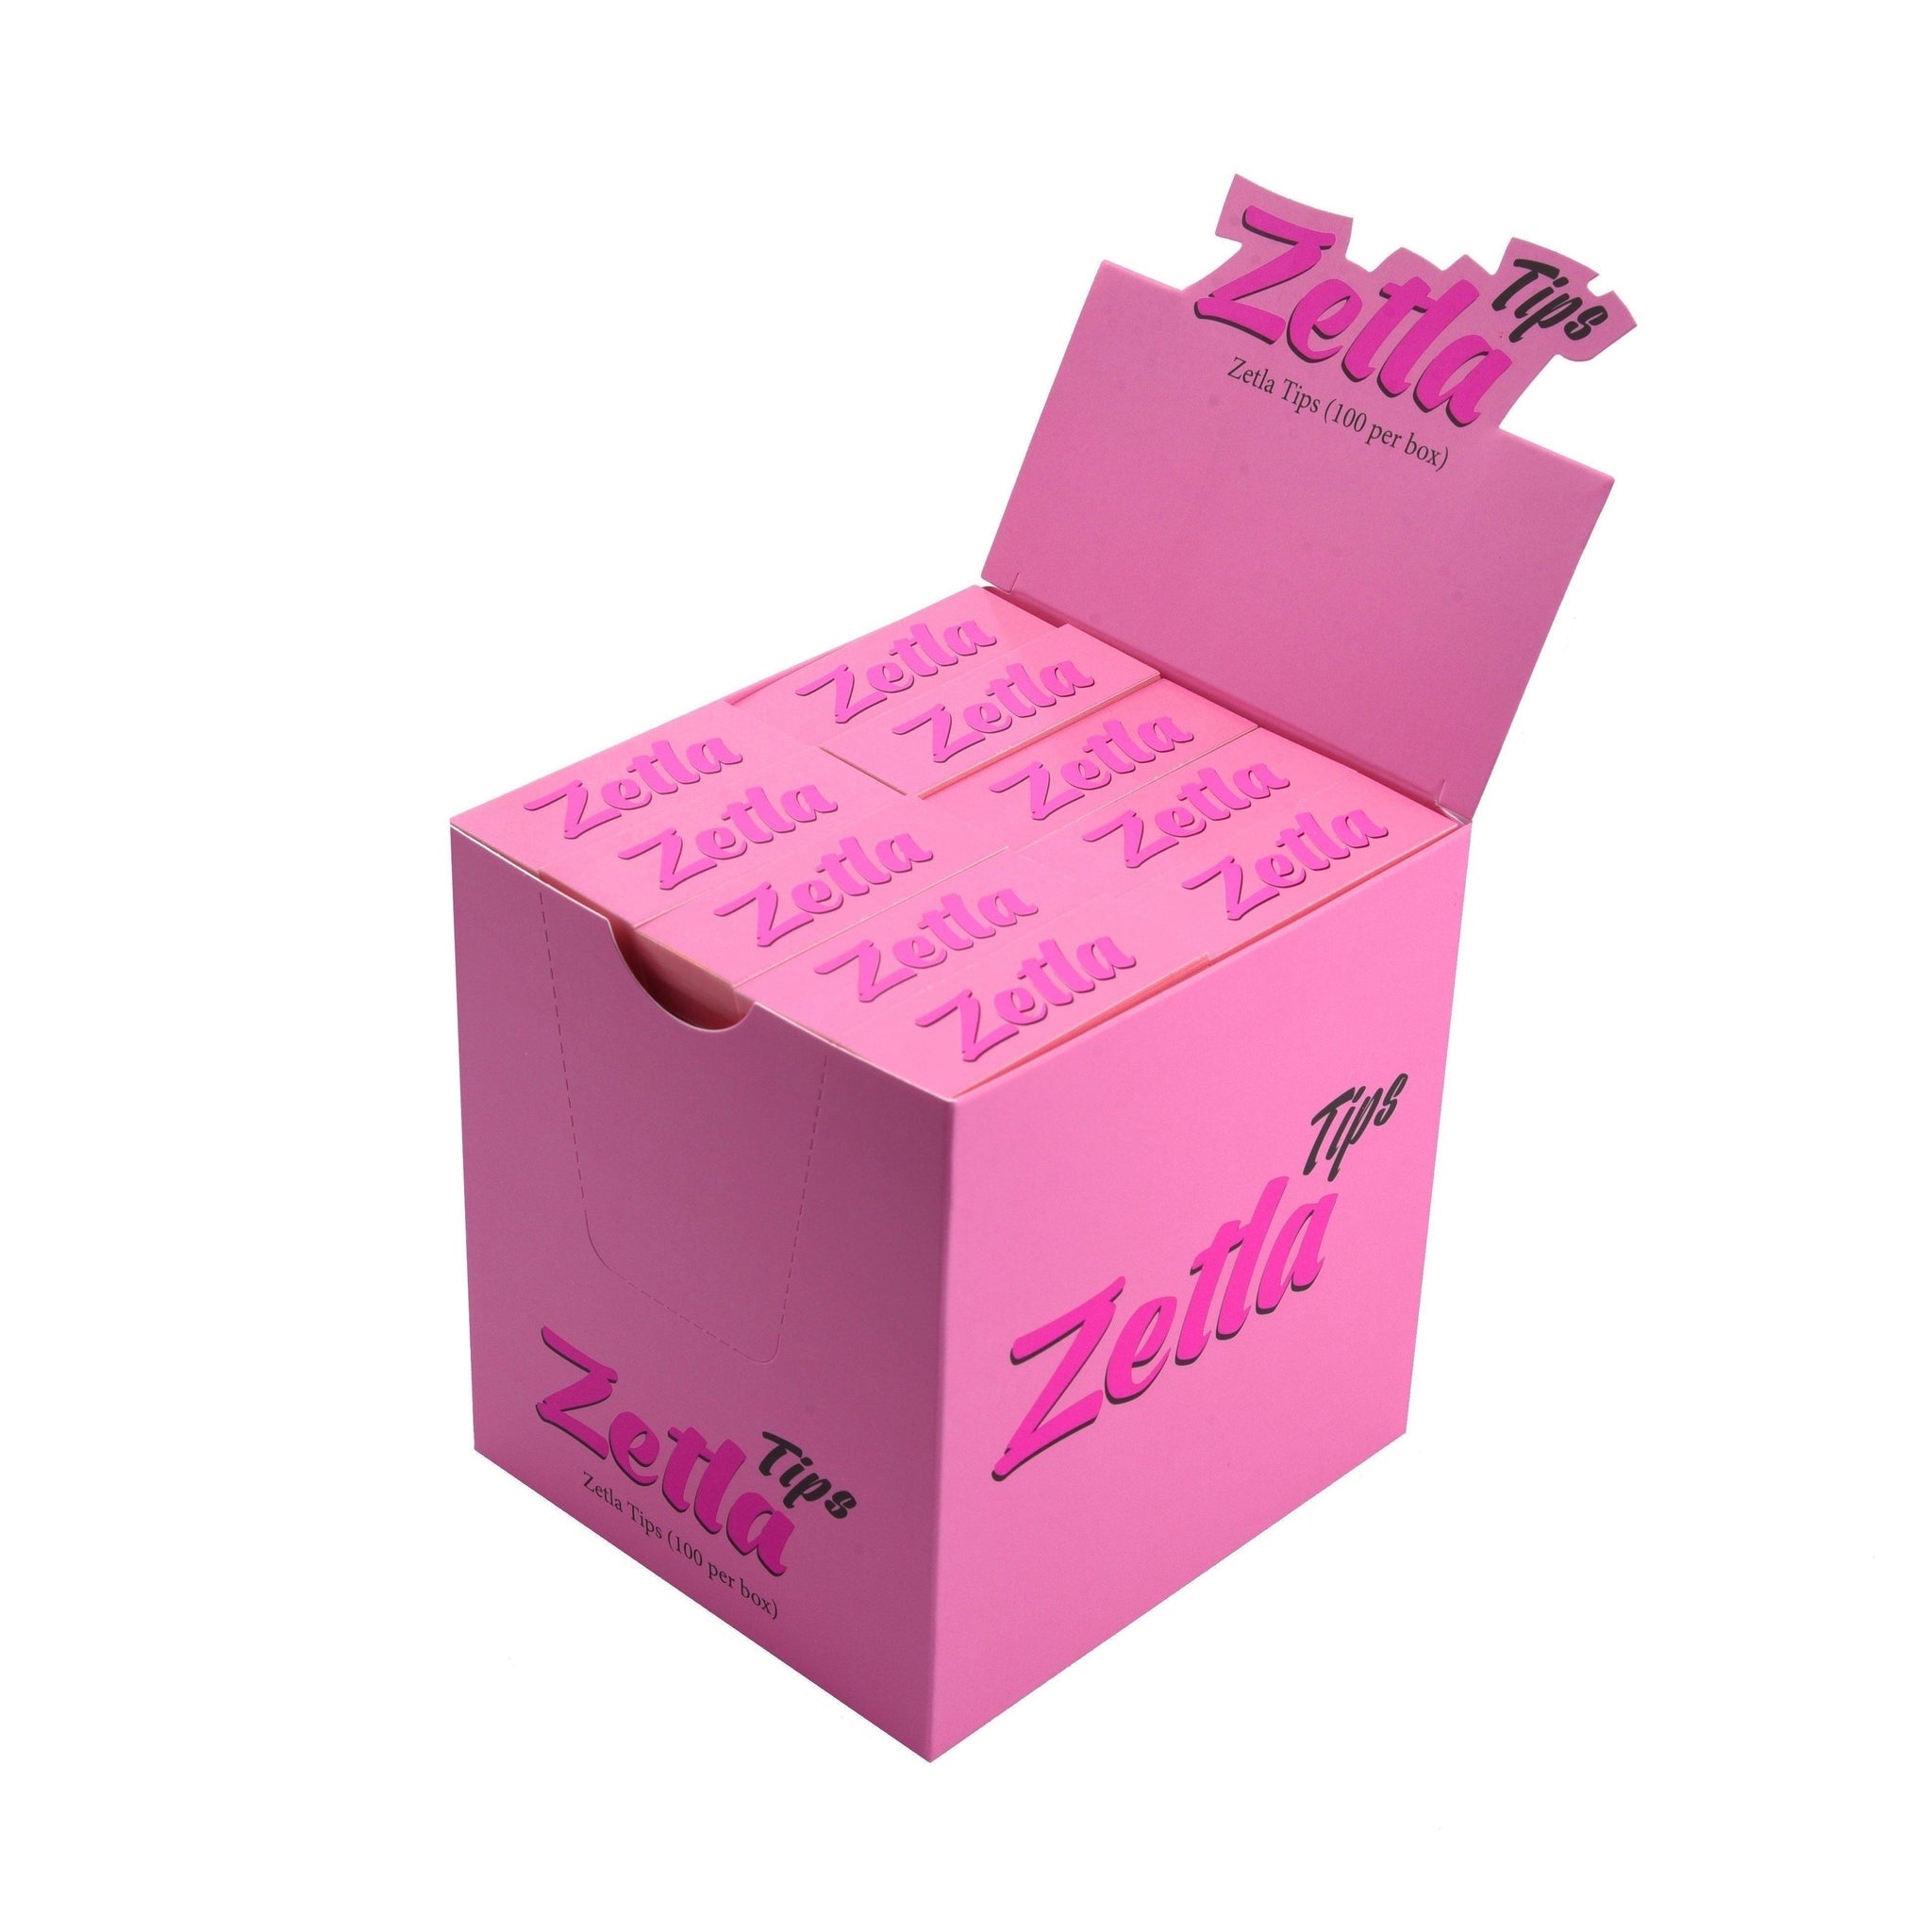 Zetla Filtertips Pink ( 100 Pcs ) - ABK Usa